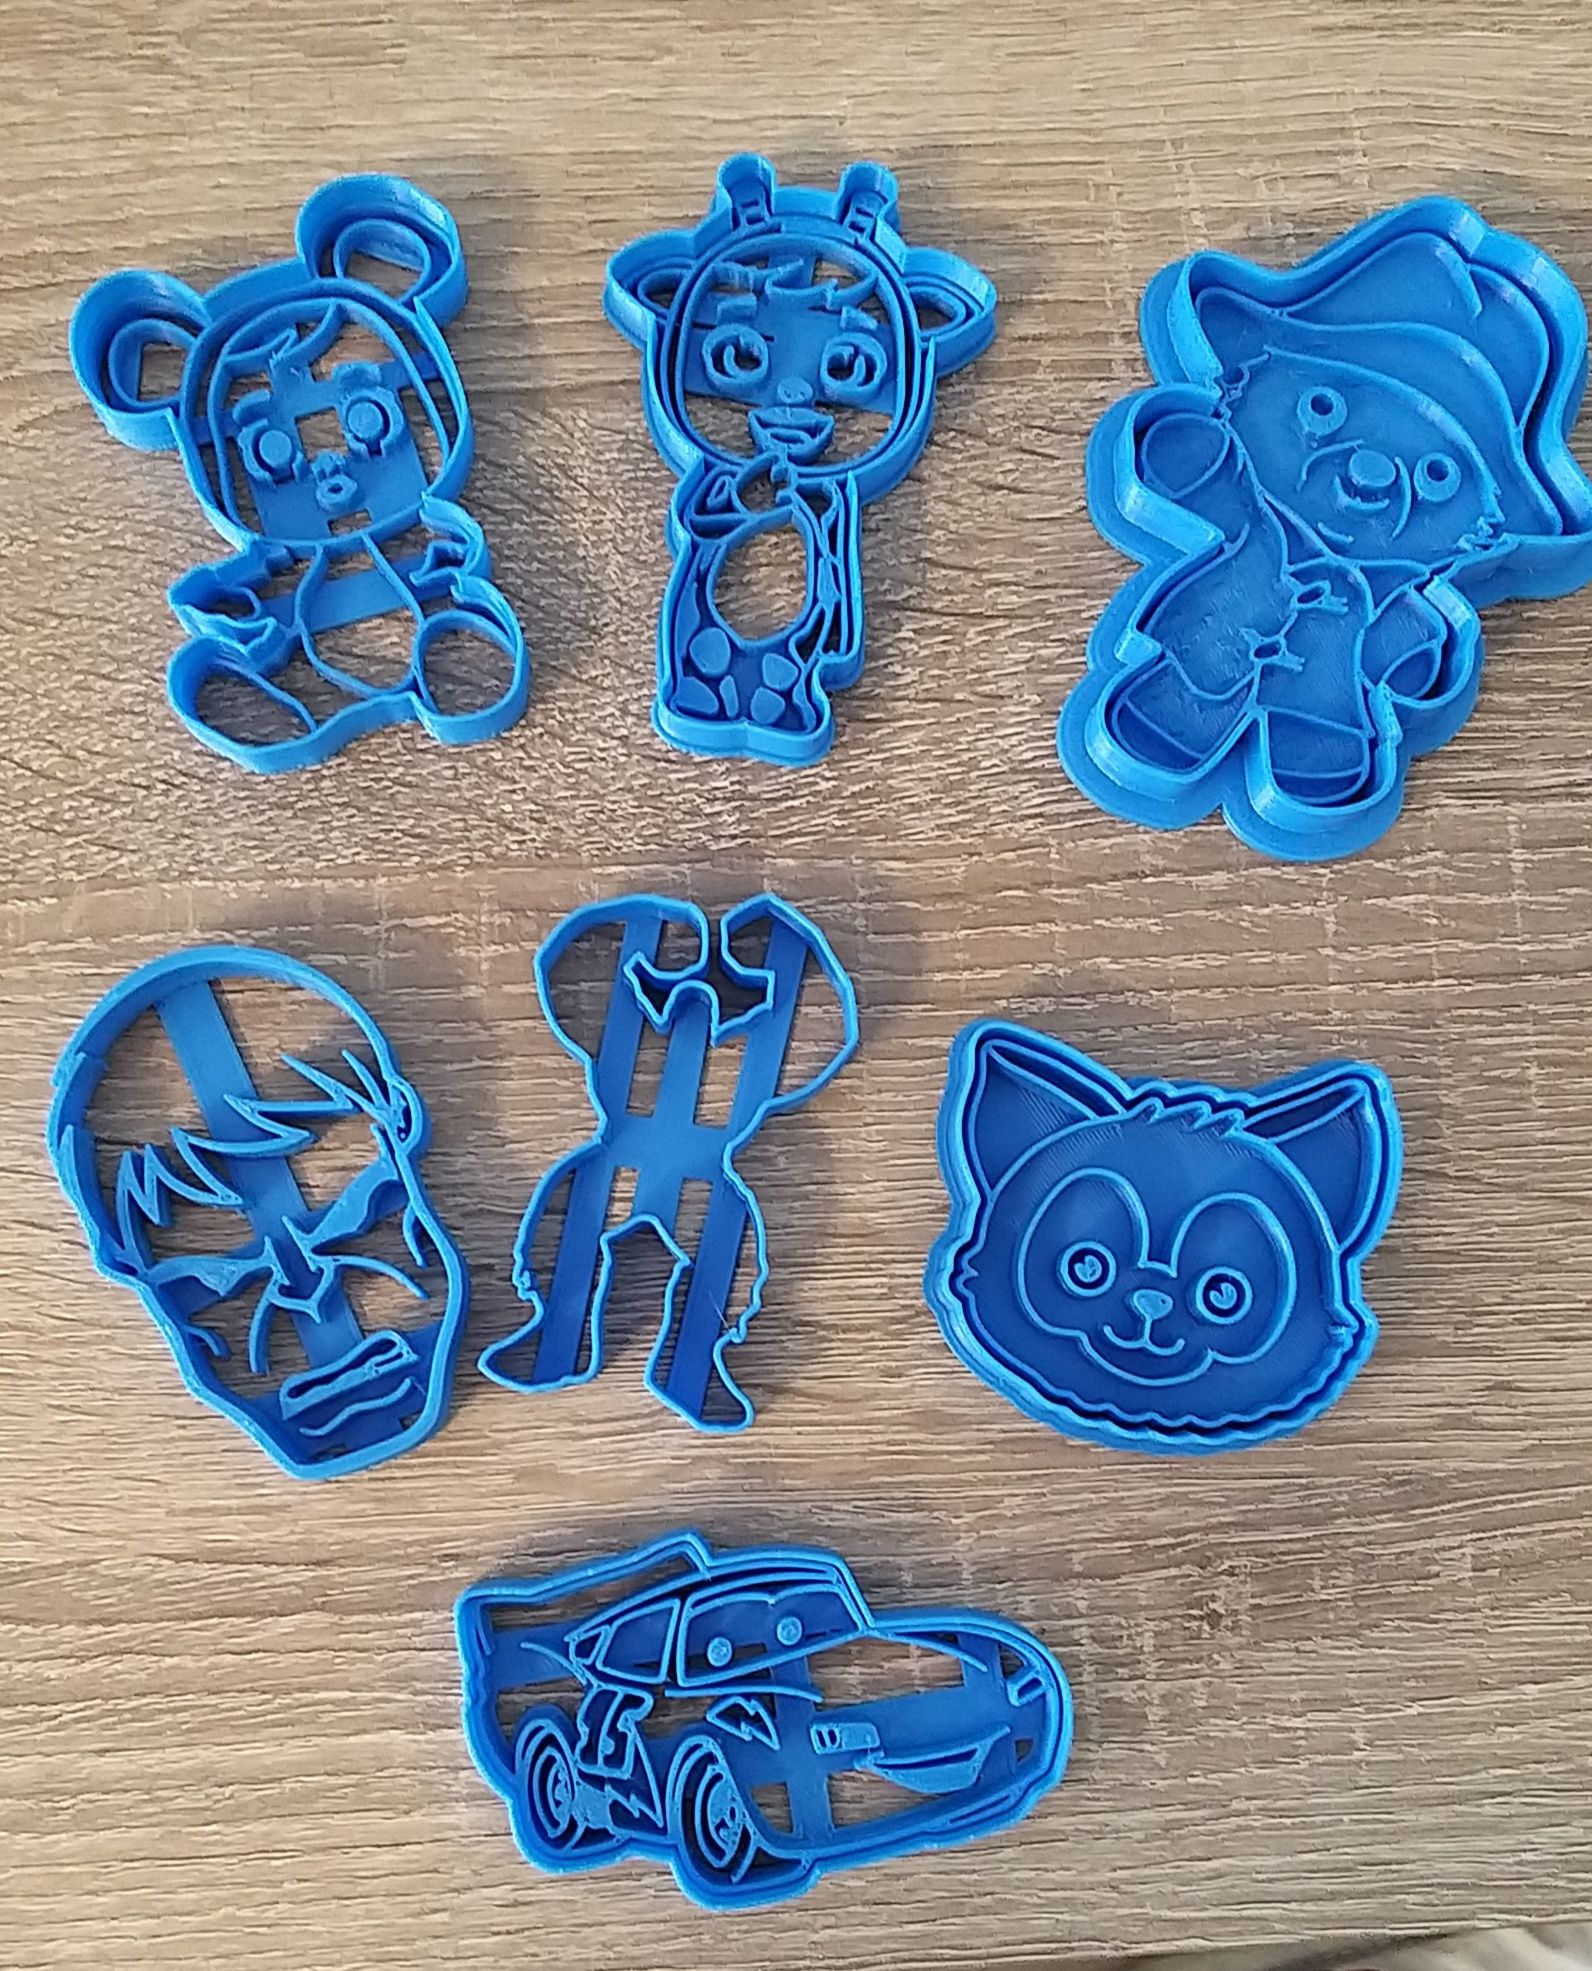 Фигурки за сладки изработени на 3D принтер